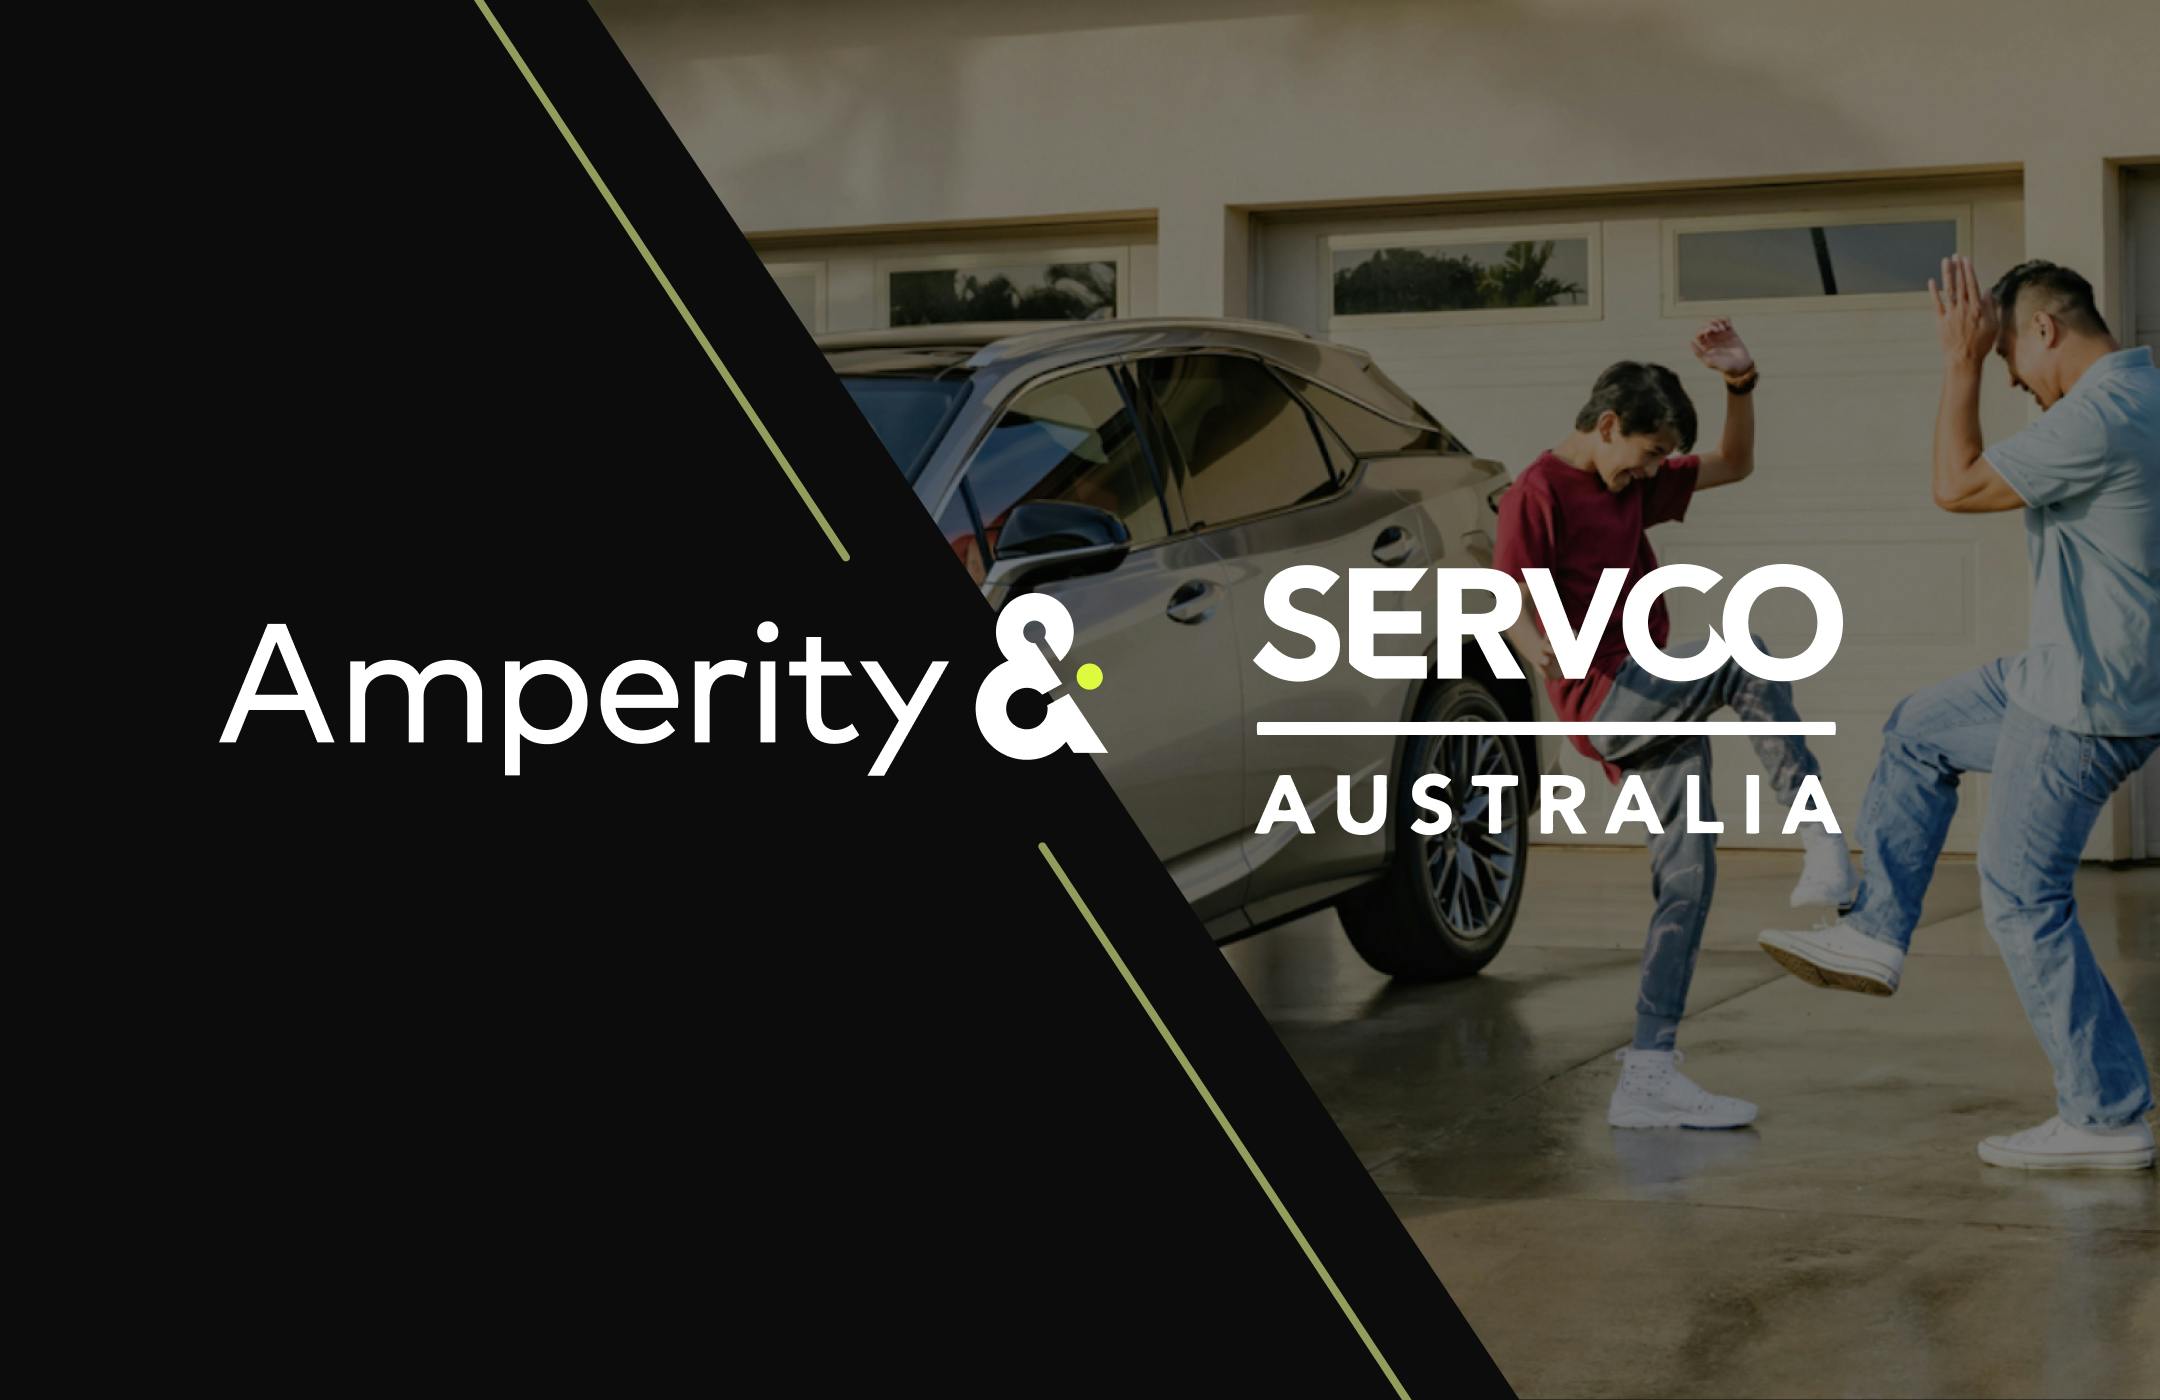 Amperity & Servco Australia